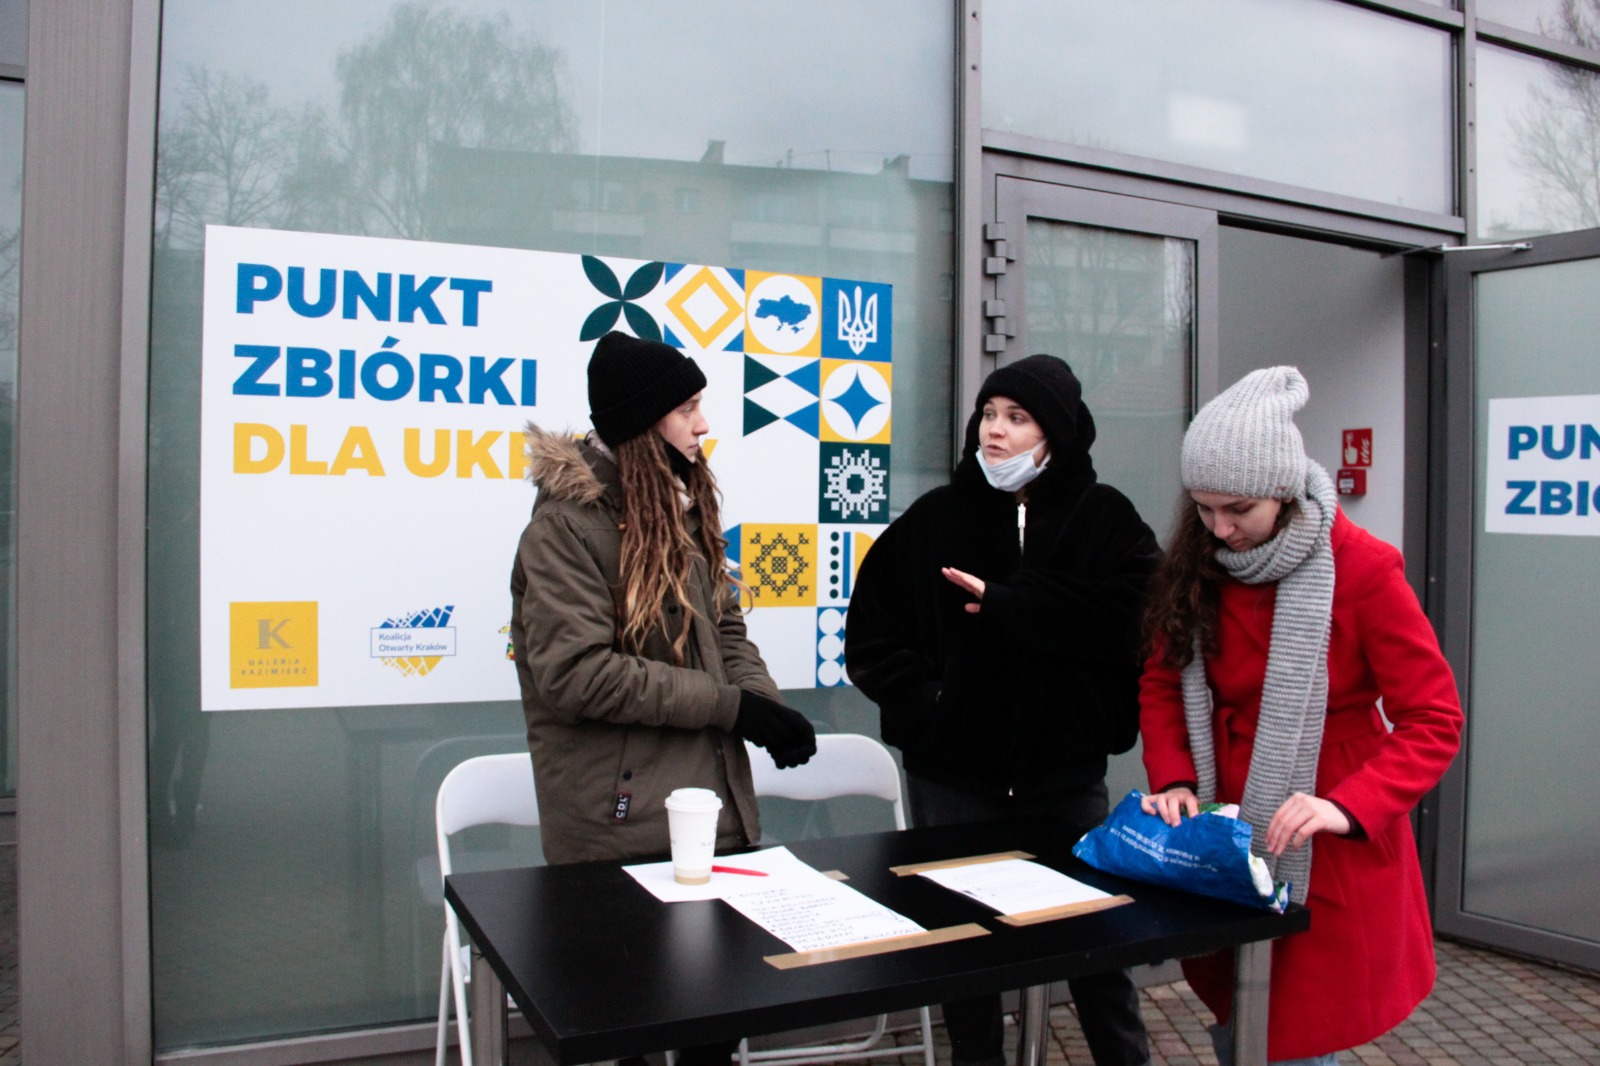 Punkt zbiórki darów dla Ukrainy - Galeria Kazimierz - przy współpracy z IB Polska - na zdjęciu wolontariusze przed Galerią czekają na dary